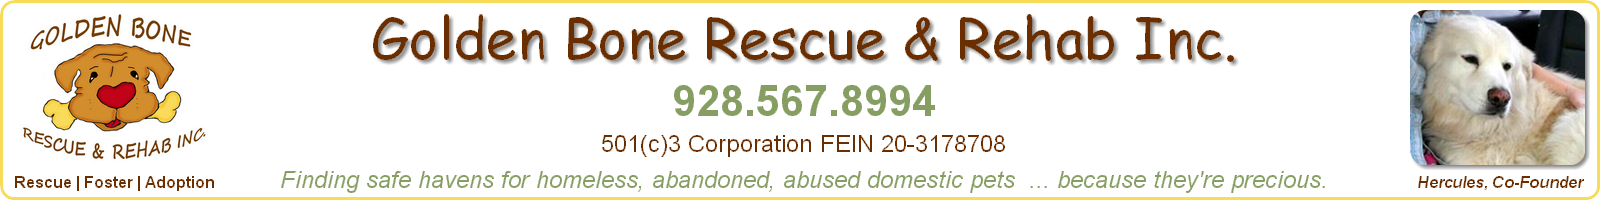 Wish List - Golden Bone Rescue & Rehab, Inc., Sedona, Arizona